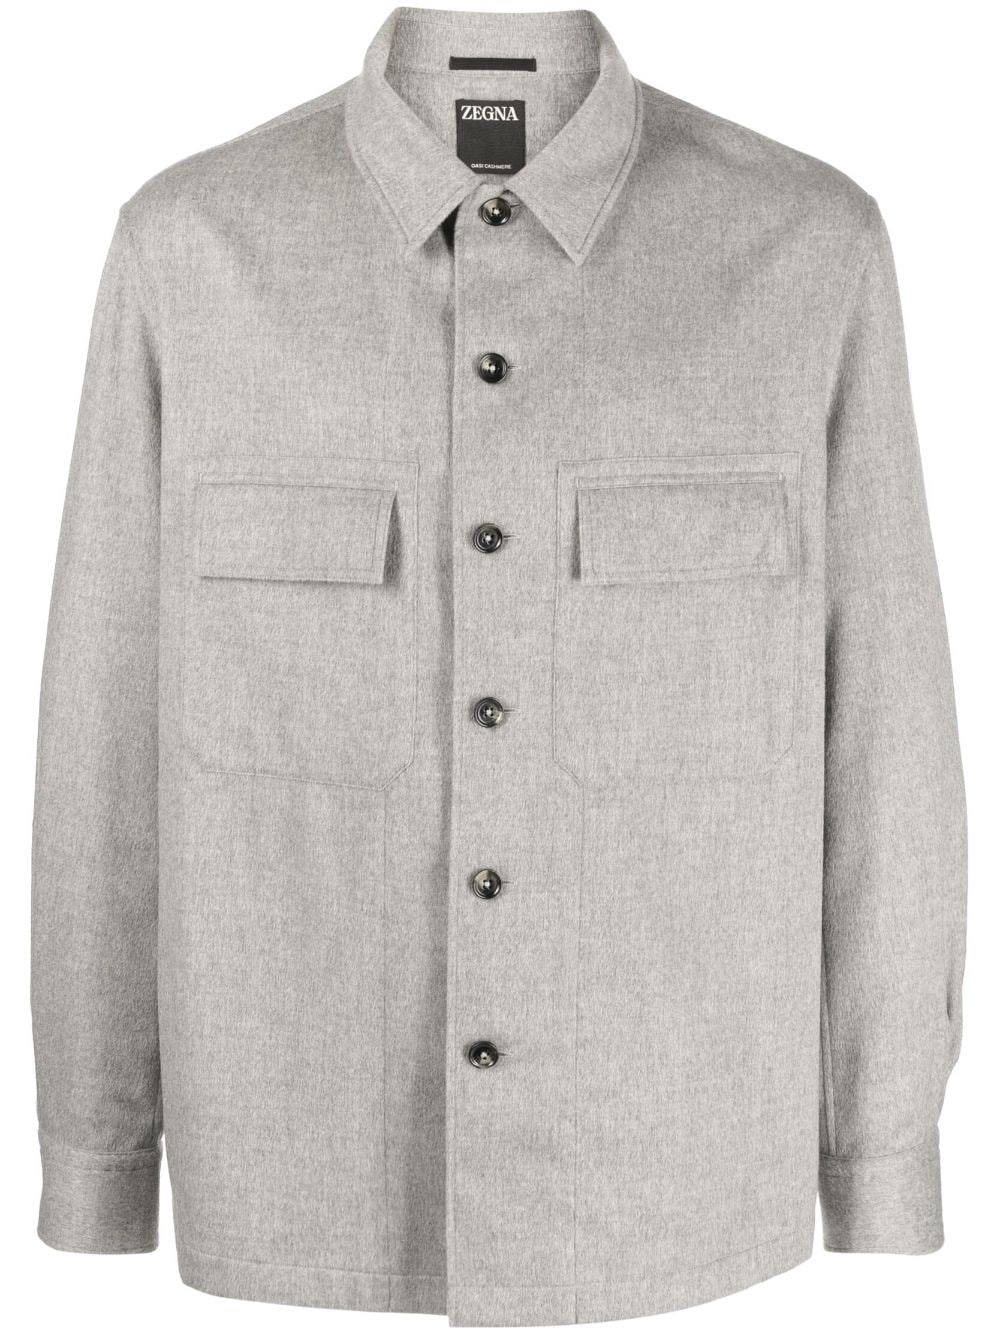 Zegna button-up cashmere shirt jacket - Grey von Zegna